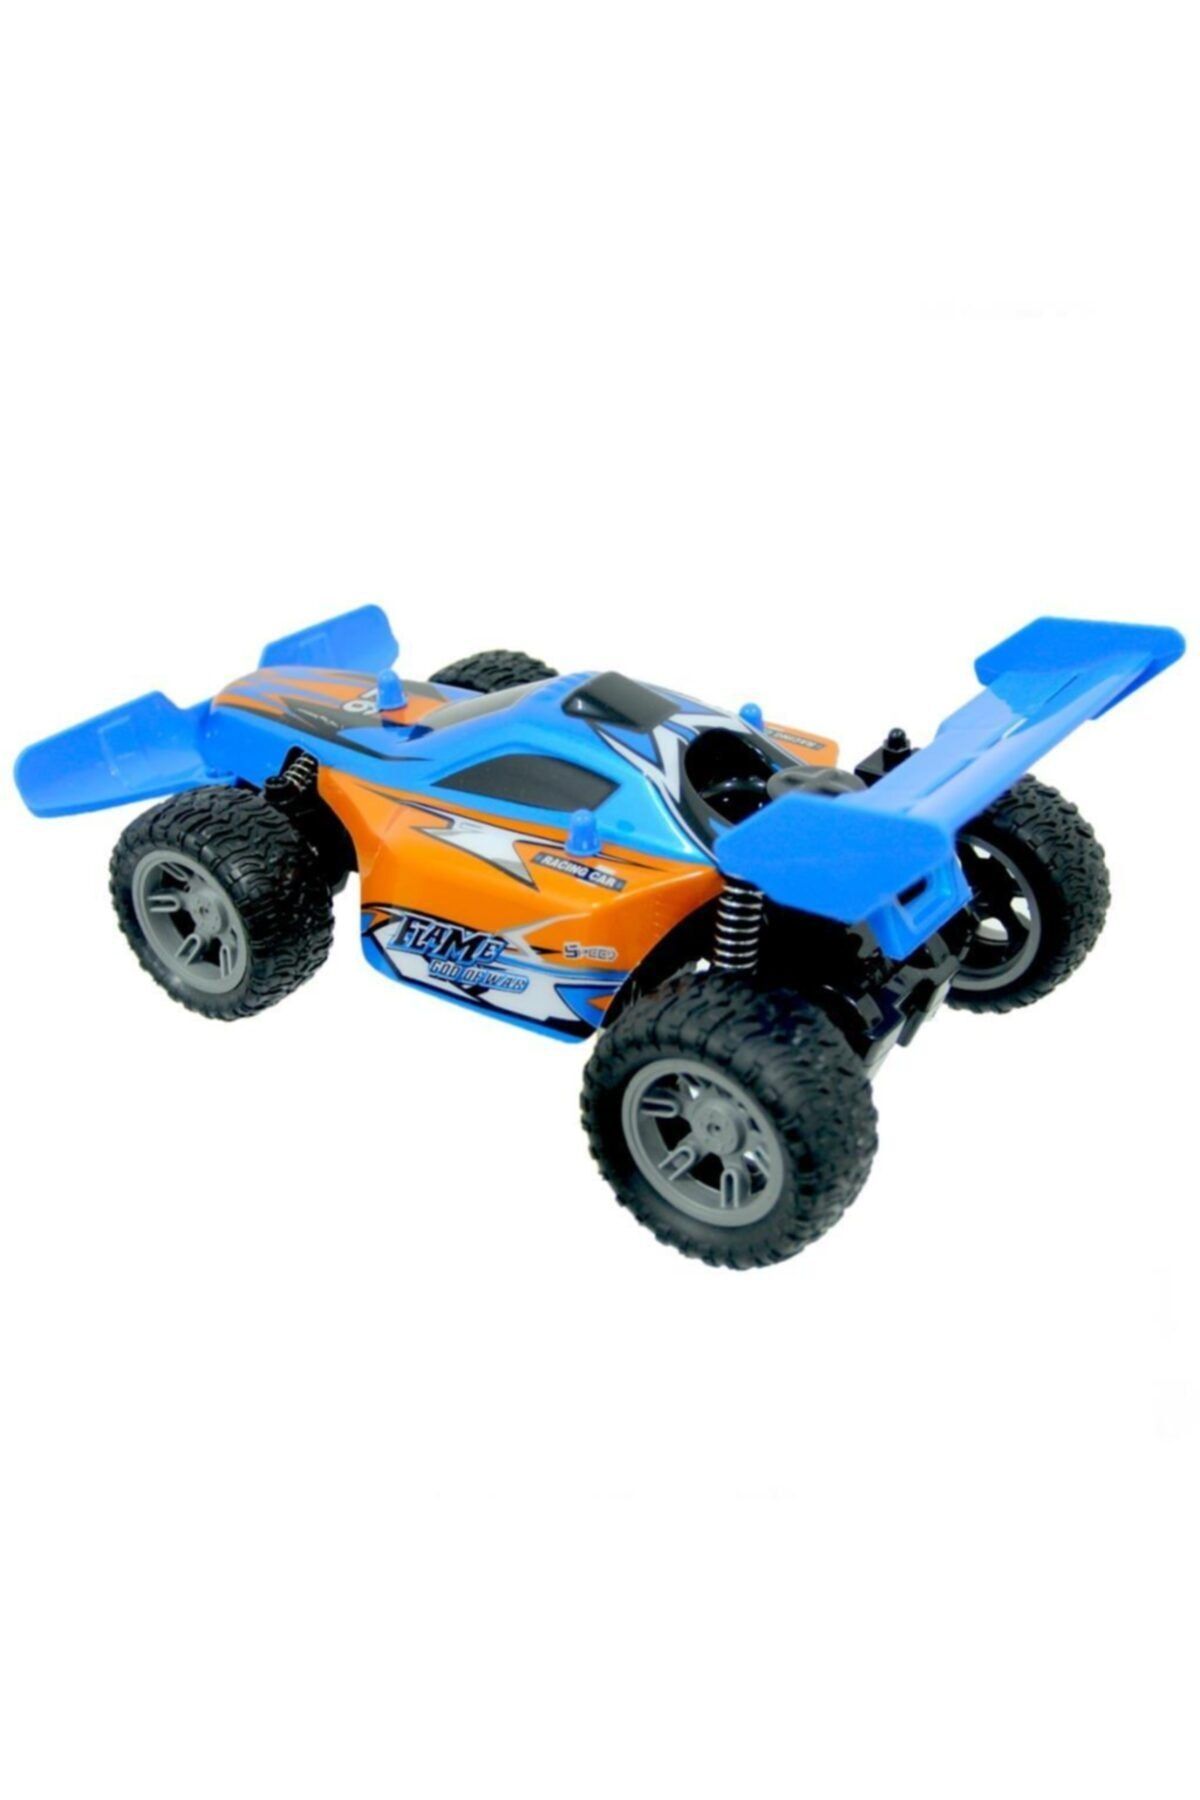 can oyuncak 1:14 Racing High Speed Şarjlı-ışıklı U/k Buggy Araba 25 Kmh Hız